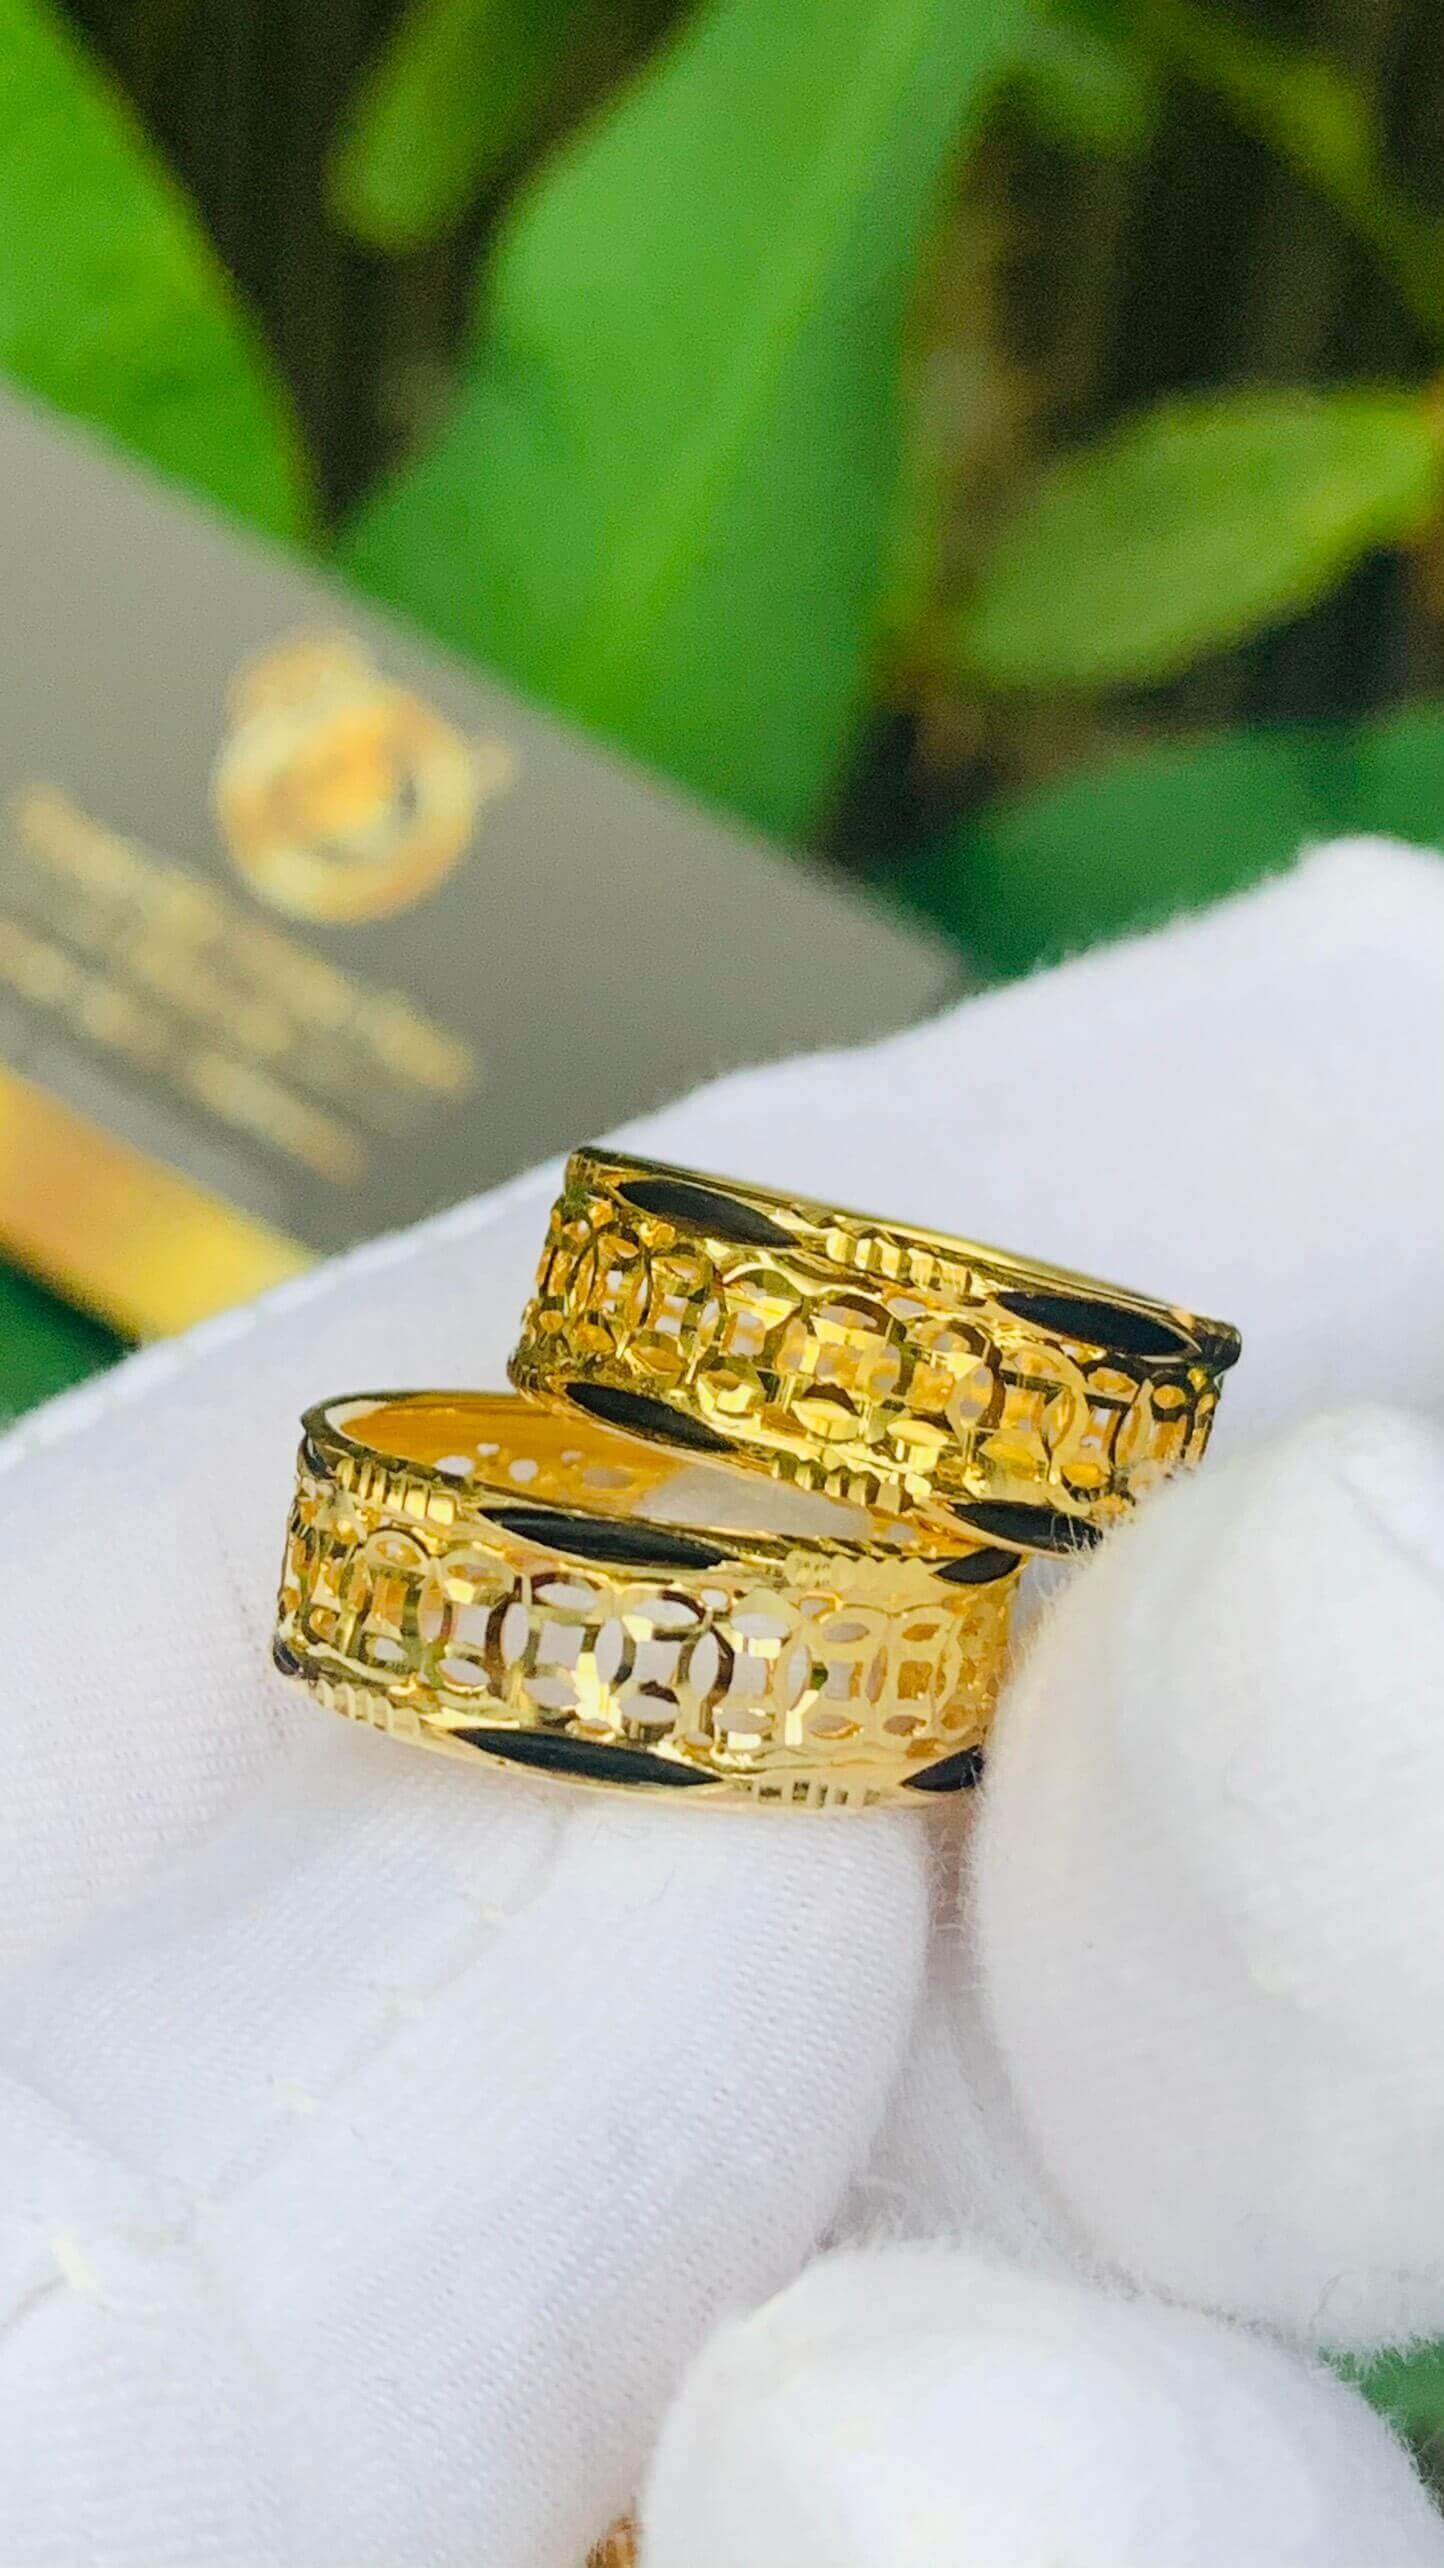 Nhẫn Kim Tiền vàng 18K mini có luồng 2 lông FAKE (Bảng 6-7mm) đẹp